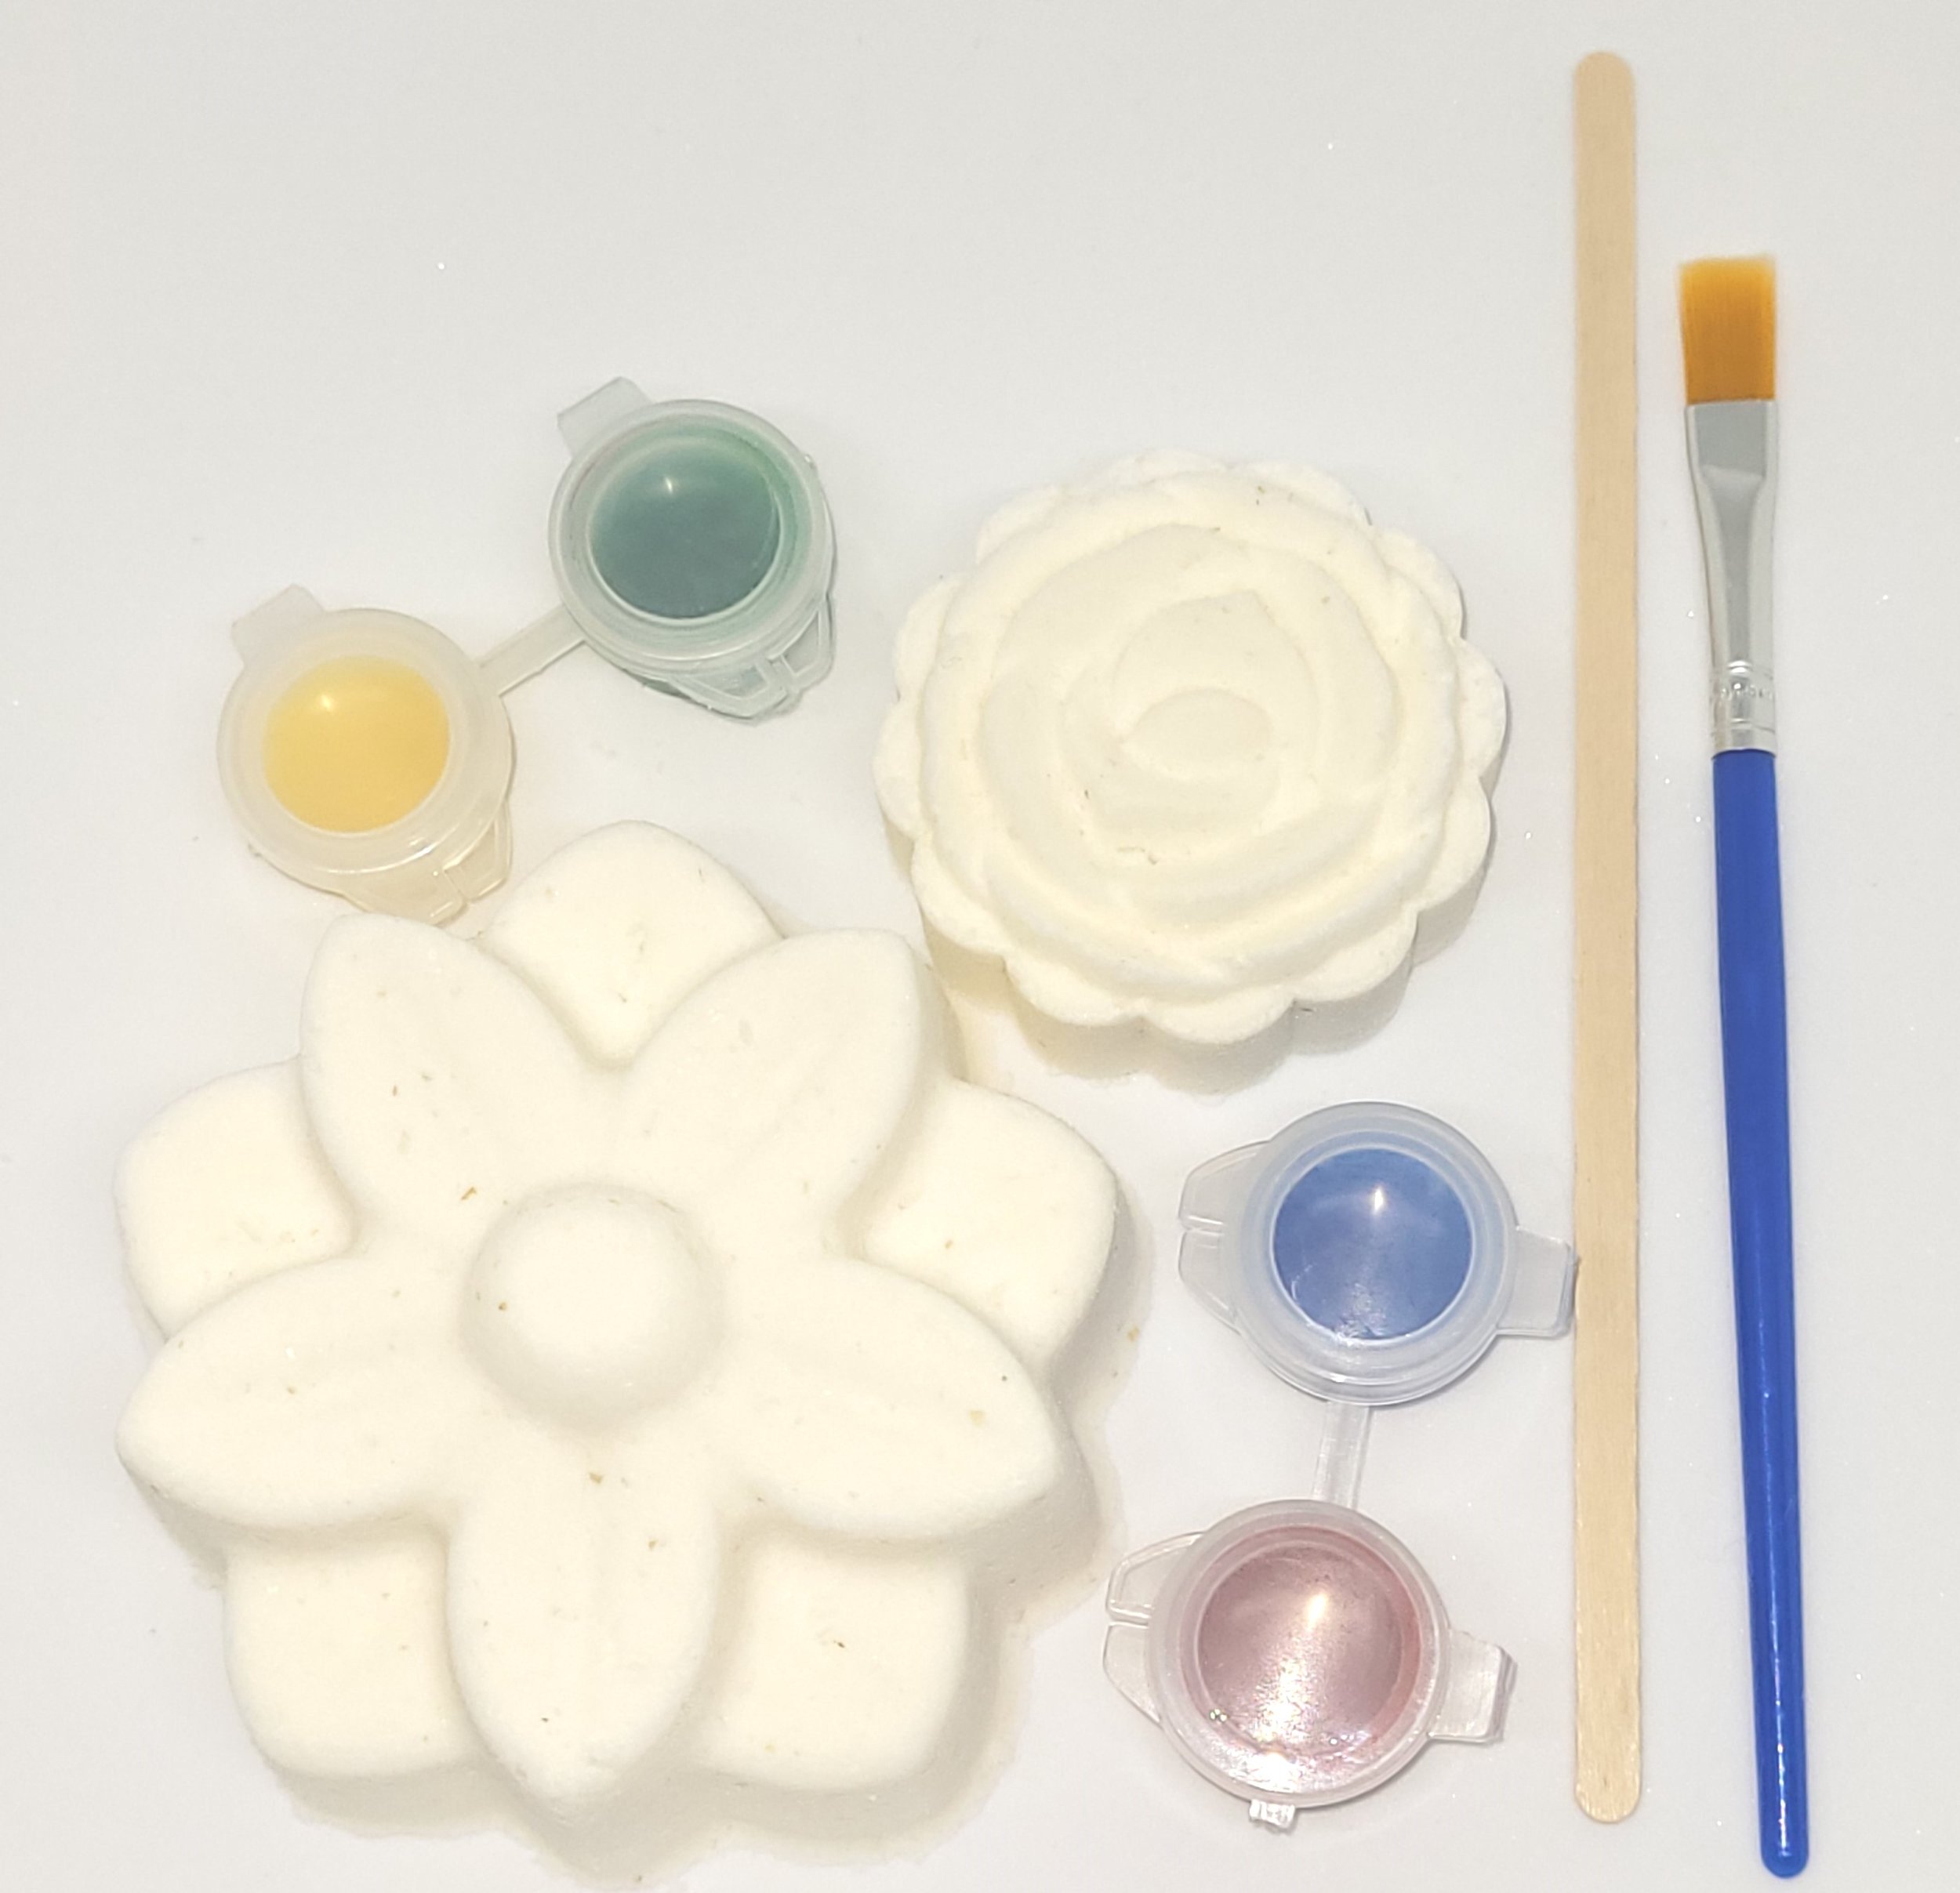 Paint Your Own Bath Bomb Kit – Bomborama